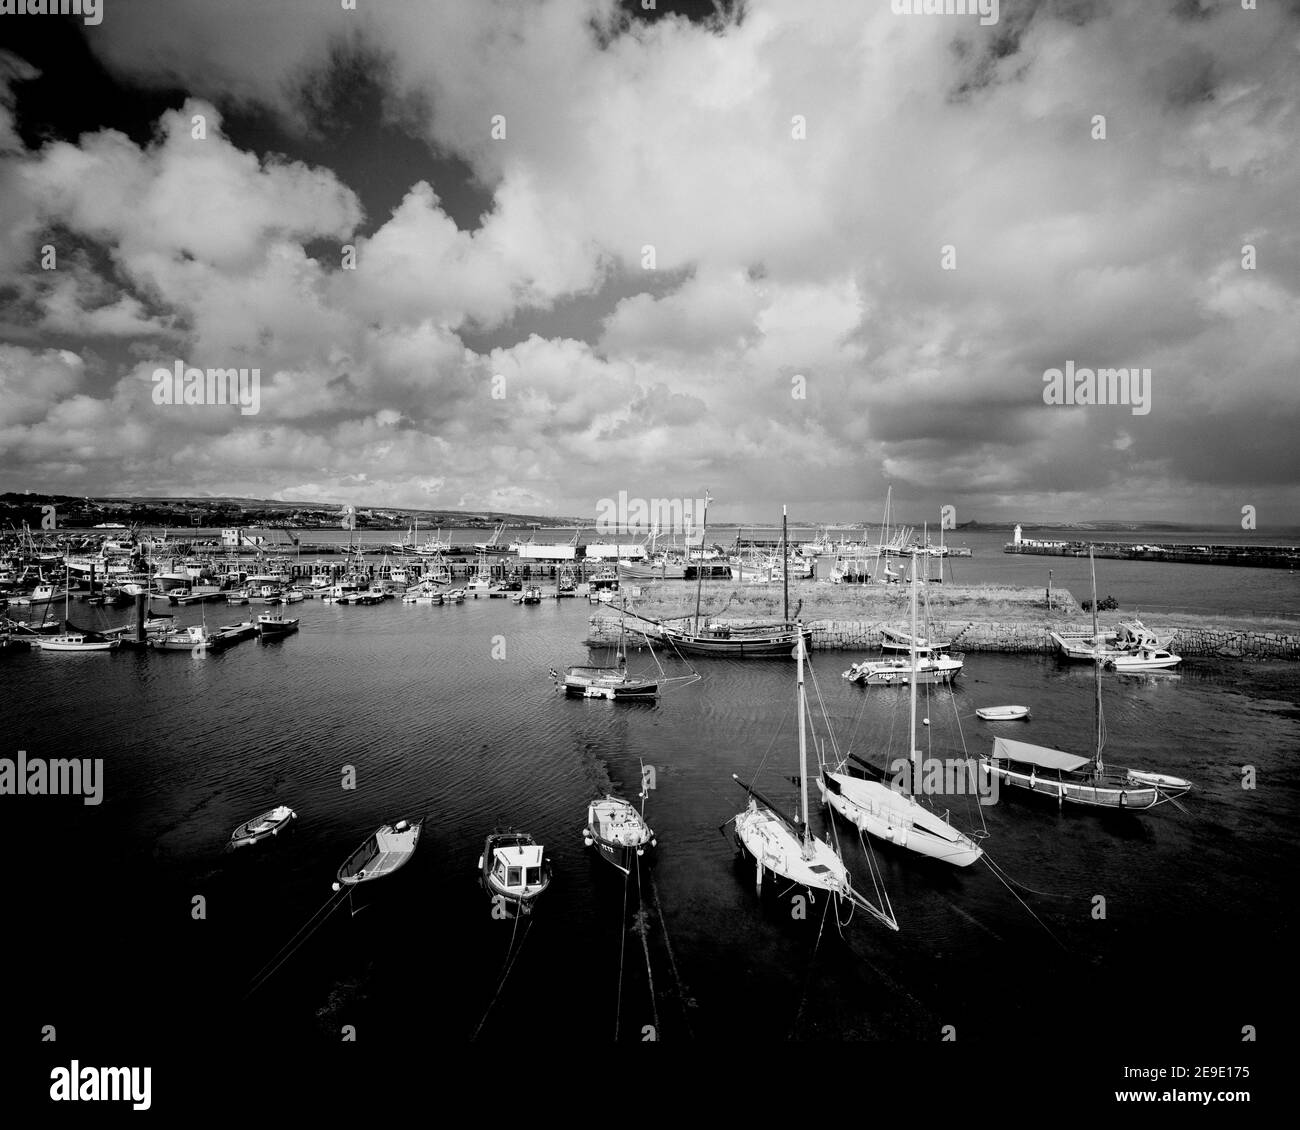 Noir et blanc, Newlyn Harbour avec yachts en premier plan, Cornwall Angleterre Banque D'Images